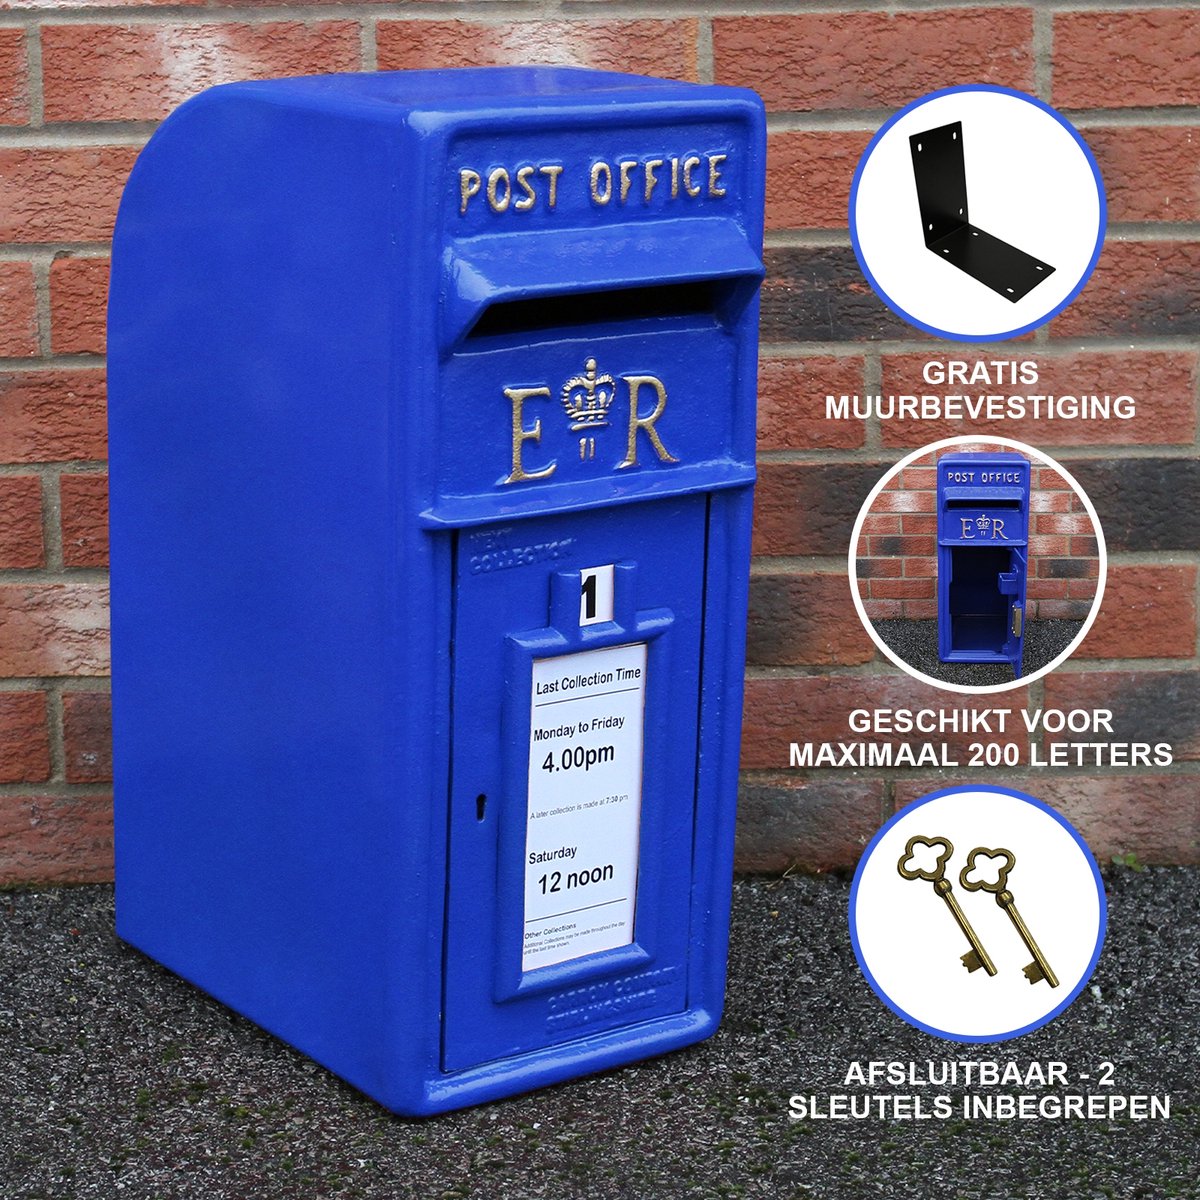 Blauwe brievenbus - 24x37x57 cm - gewichtscapiciteit: tot 200 brieven - Inclusief muurbeugel - Afsluitbaar - 2 gouden sleutels - Schotland